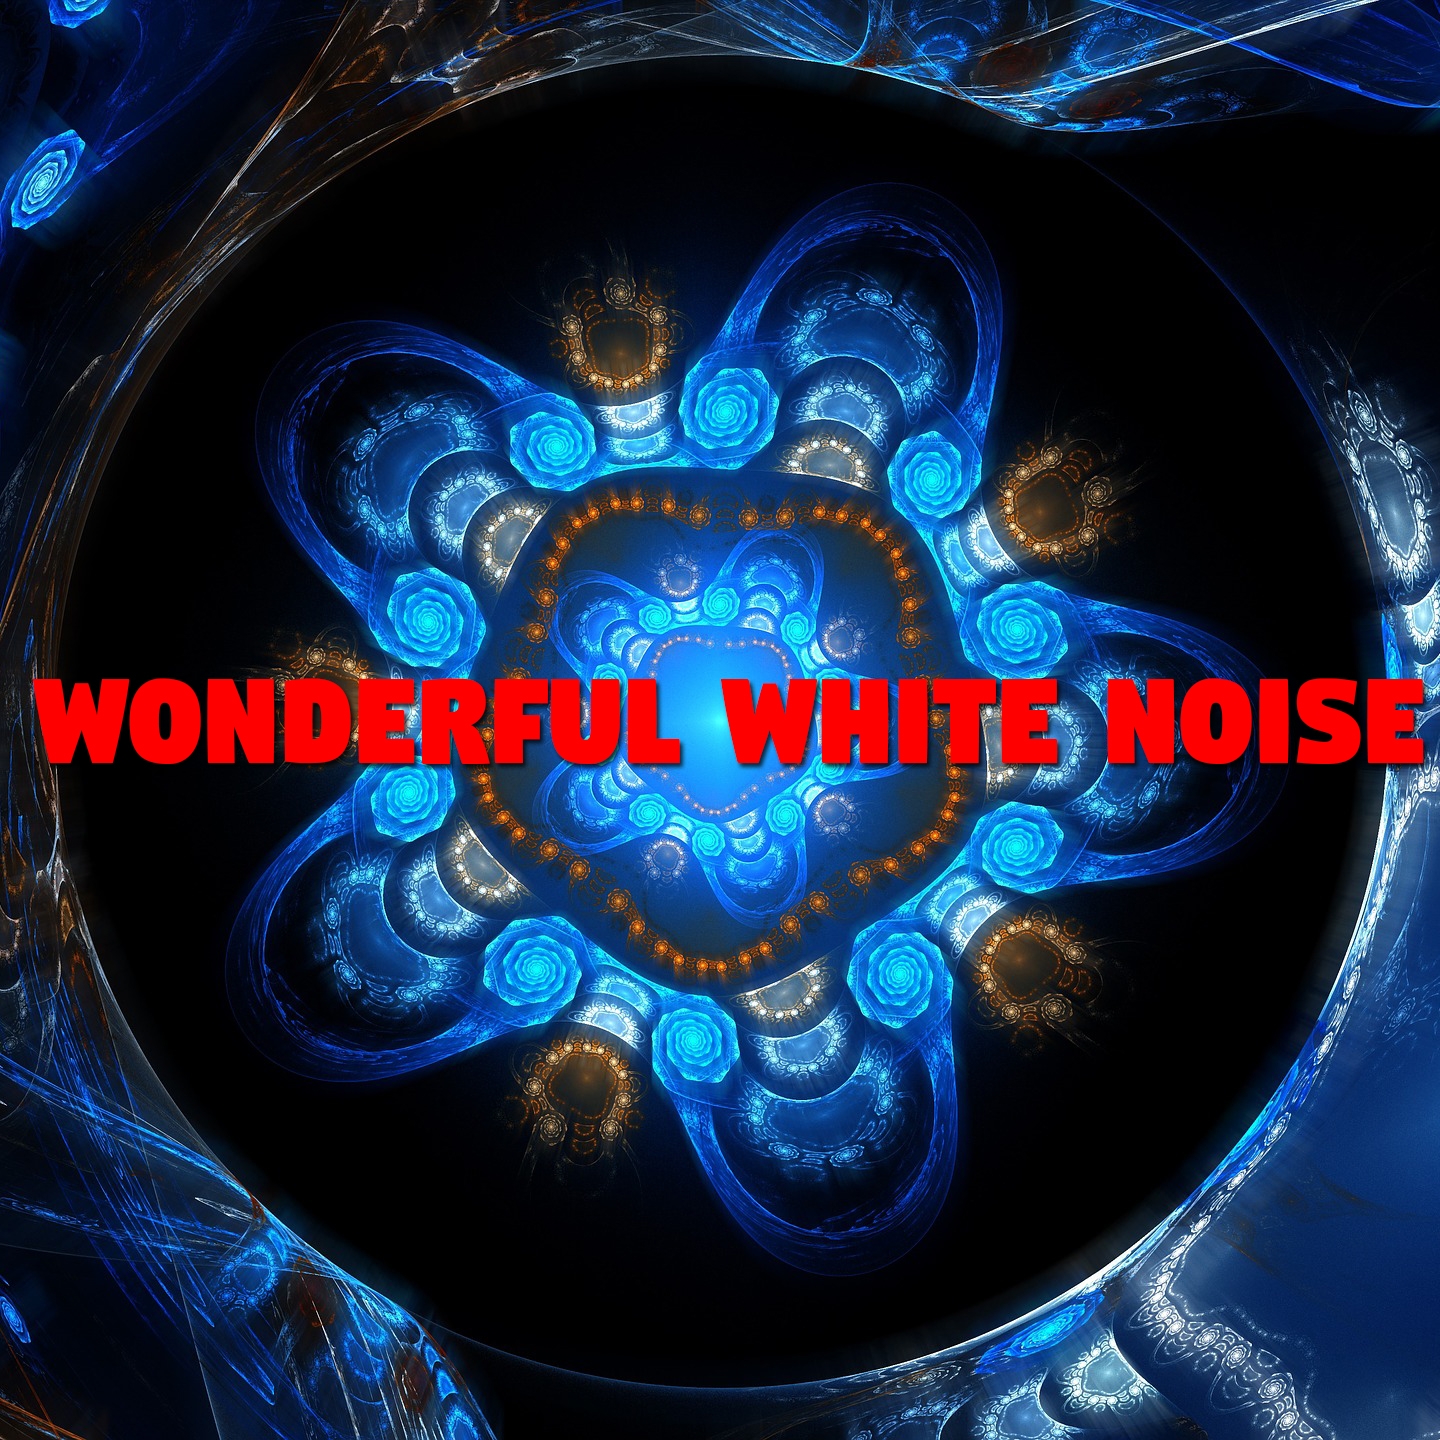 Wonderful White Noise